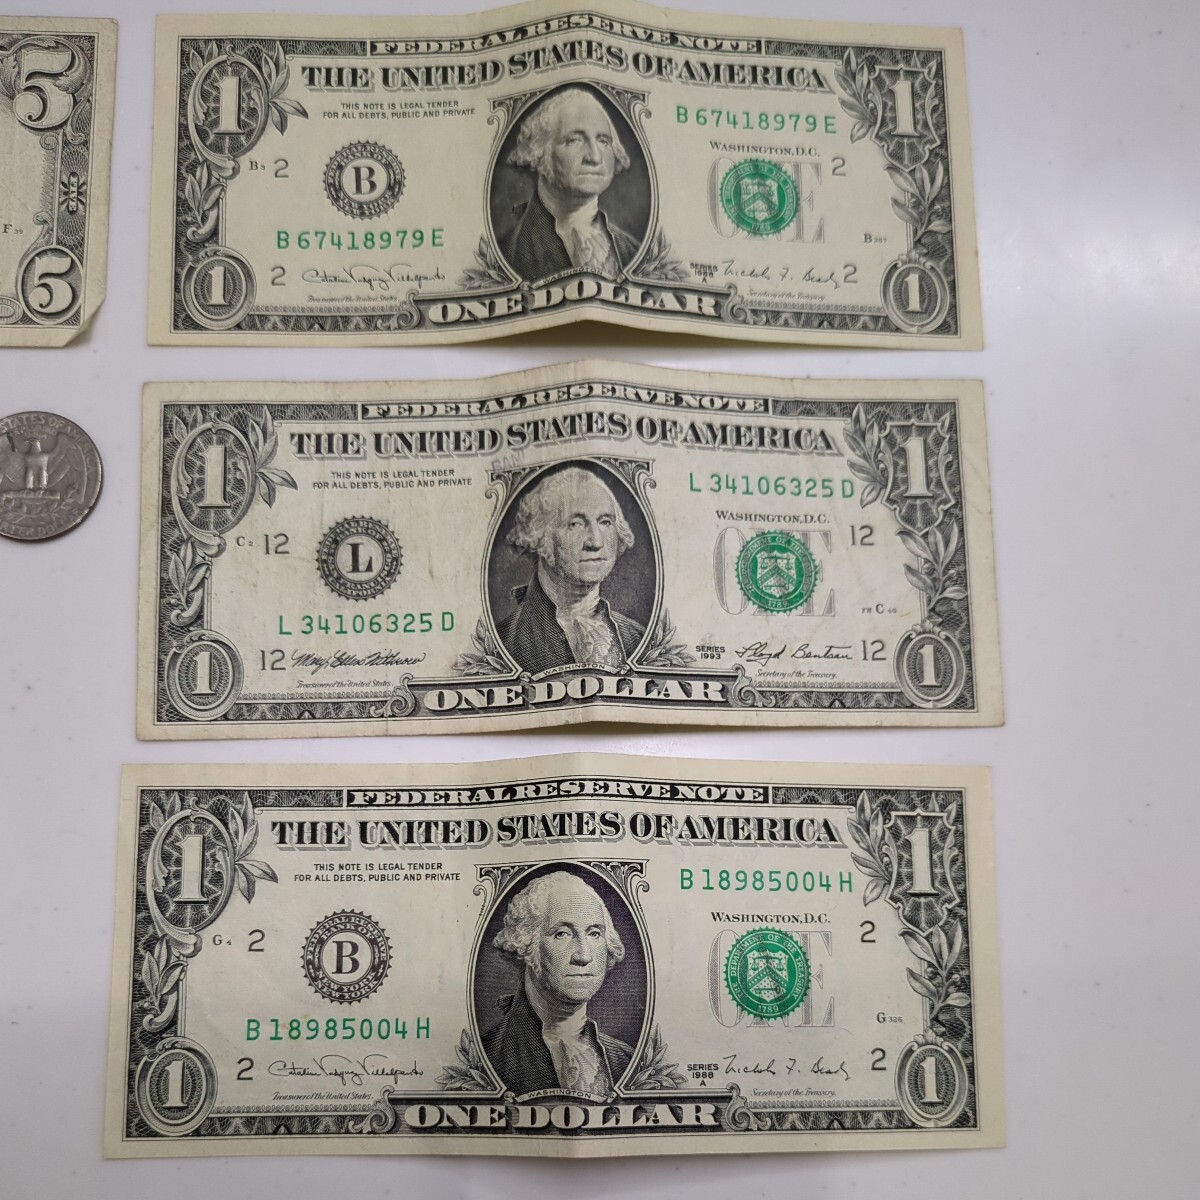 [ доллар .. суммировать ] America зарубежный sen банкноты деньги * доллар .1 доллар 5 доллар суммировать итого 10 доллар 28 цент DOLLARS мир коллекция 